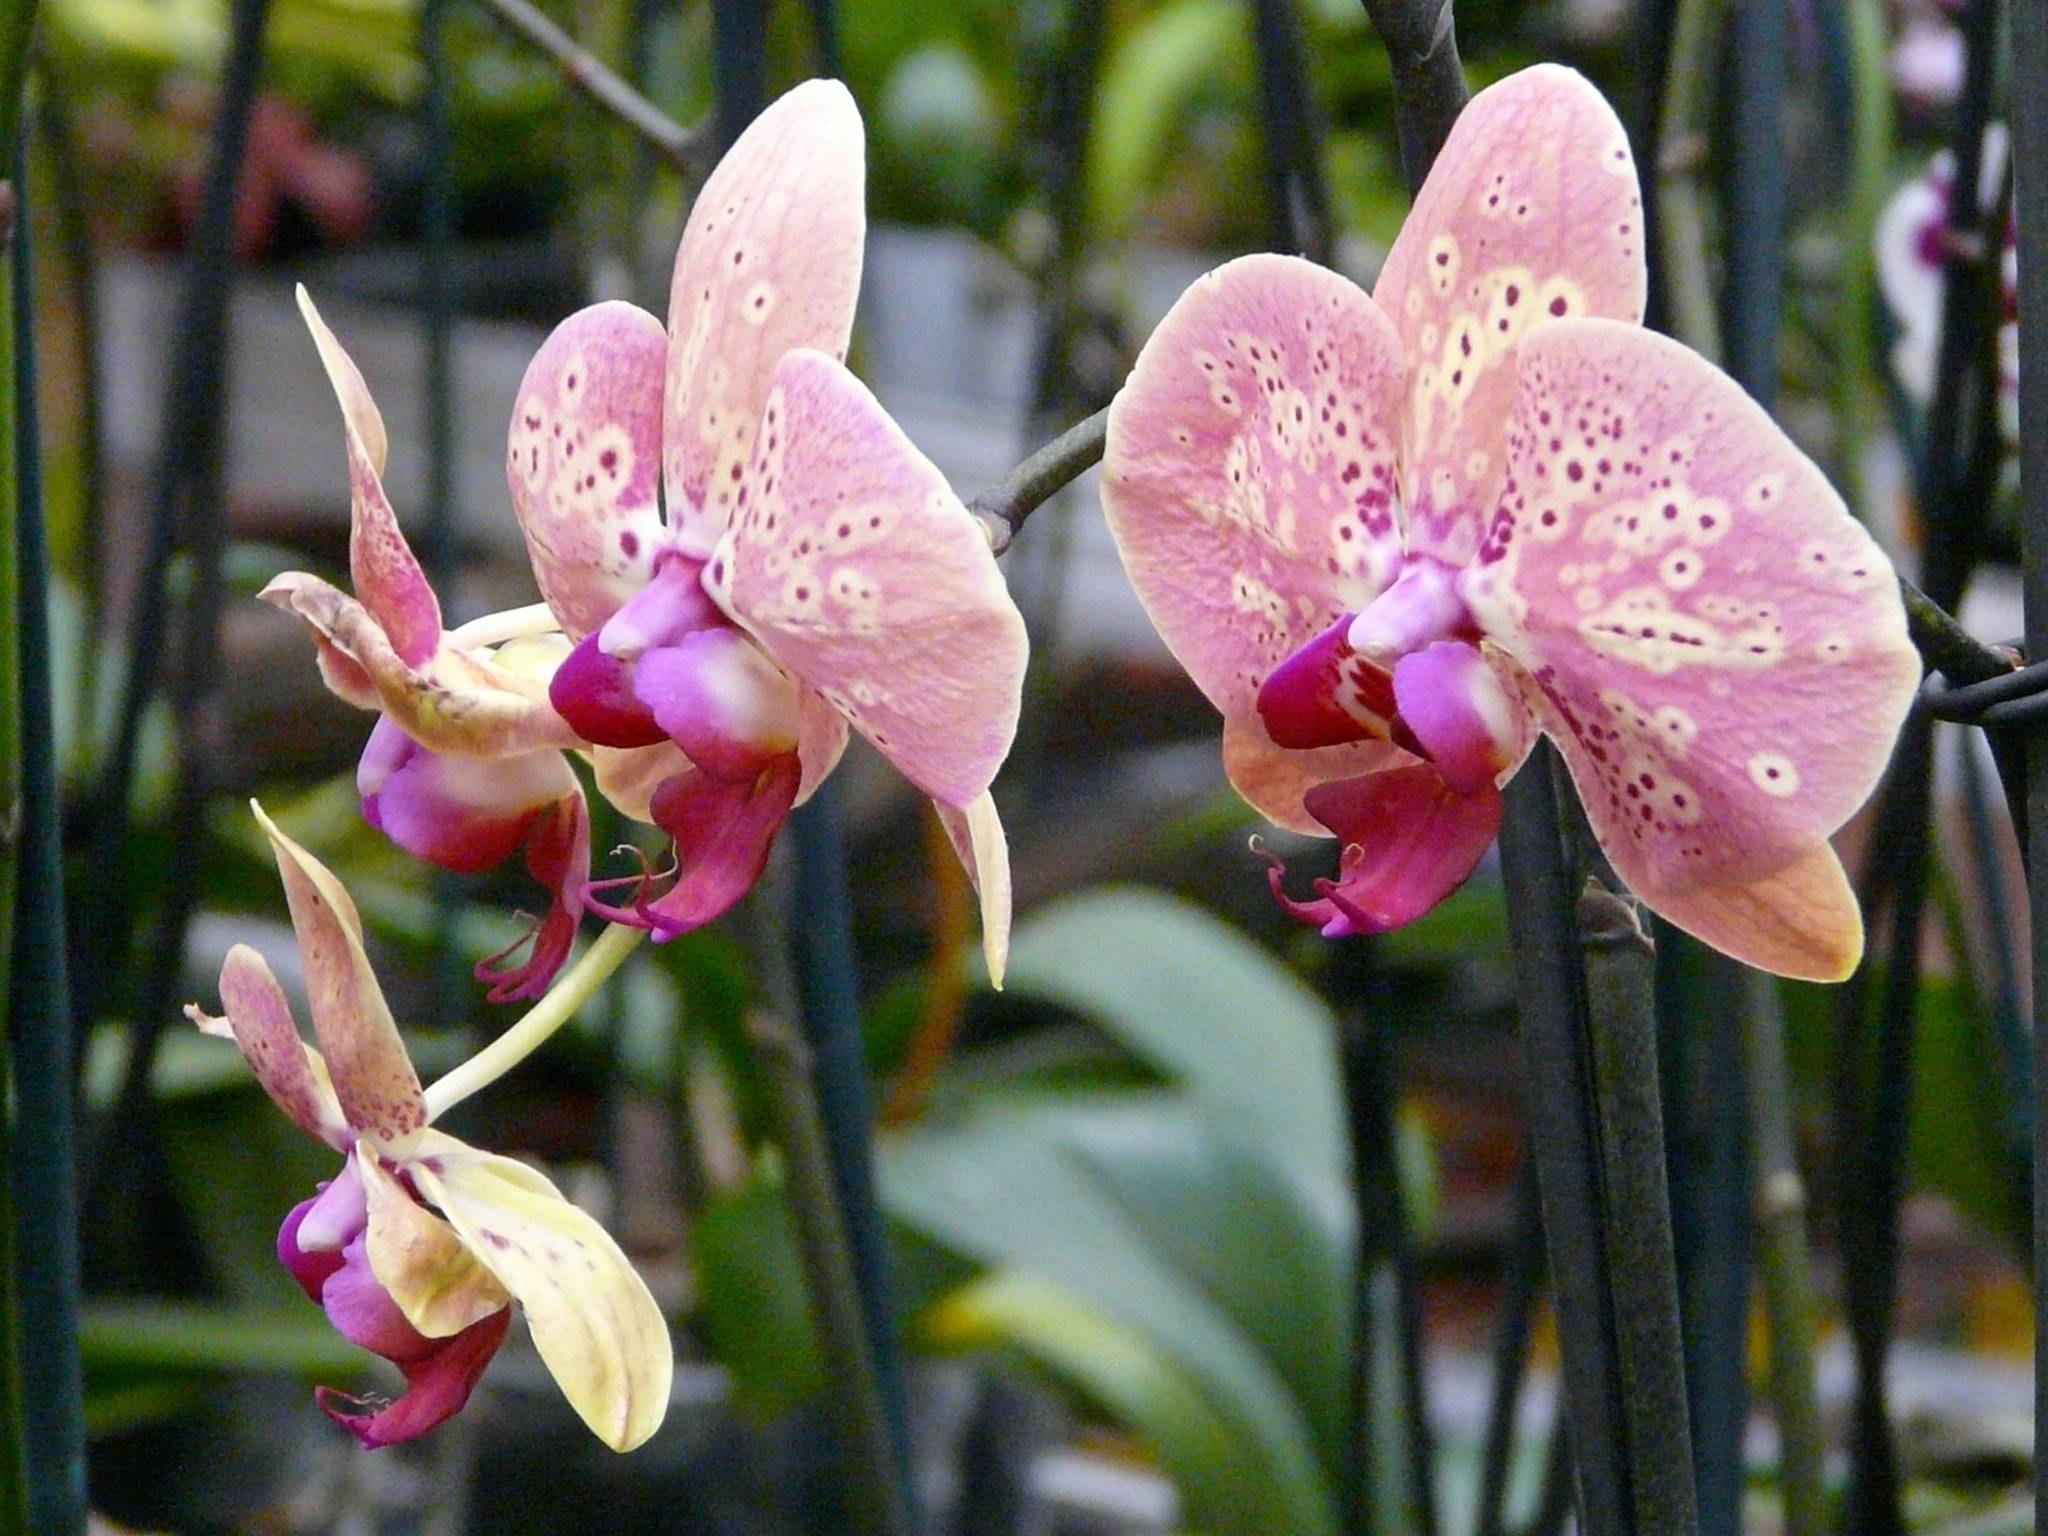 Правила подбора грунта при выращивании орхидеи фаленопсис. как сделать субстрат самому?